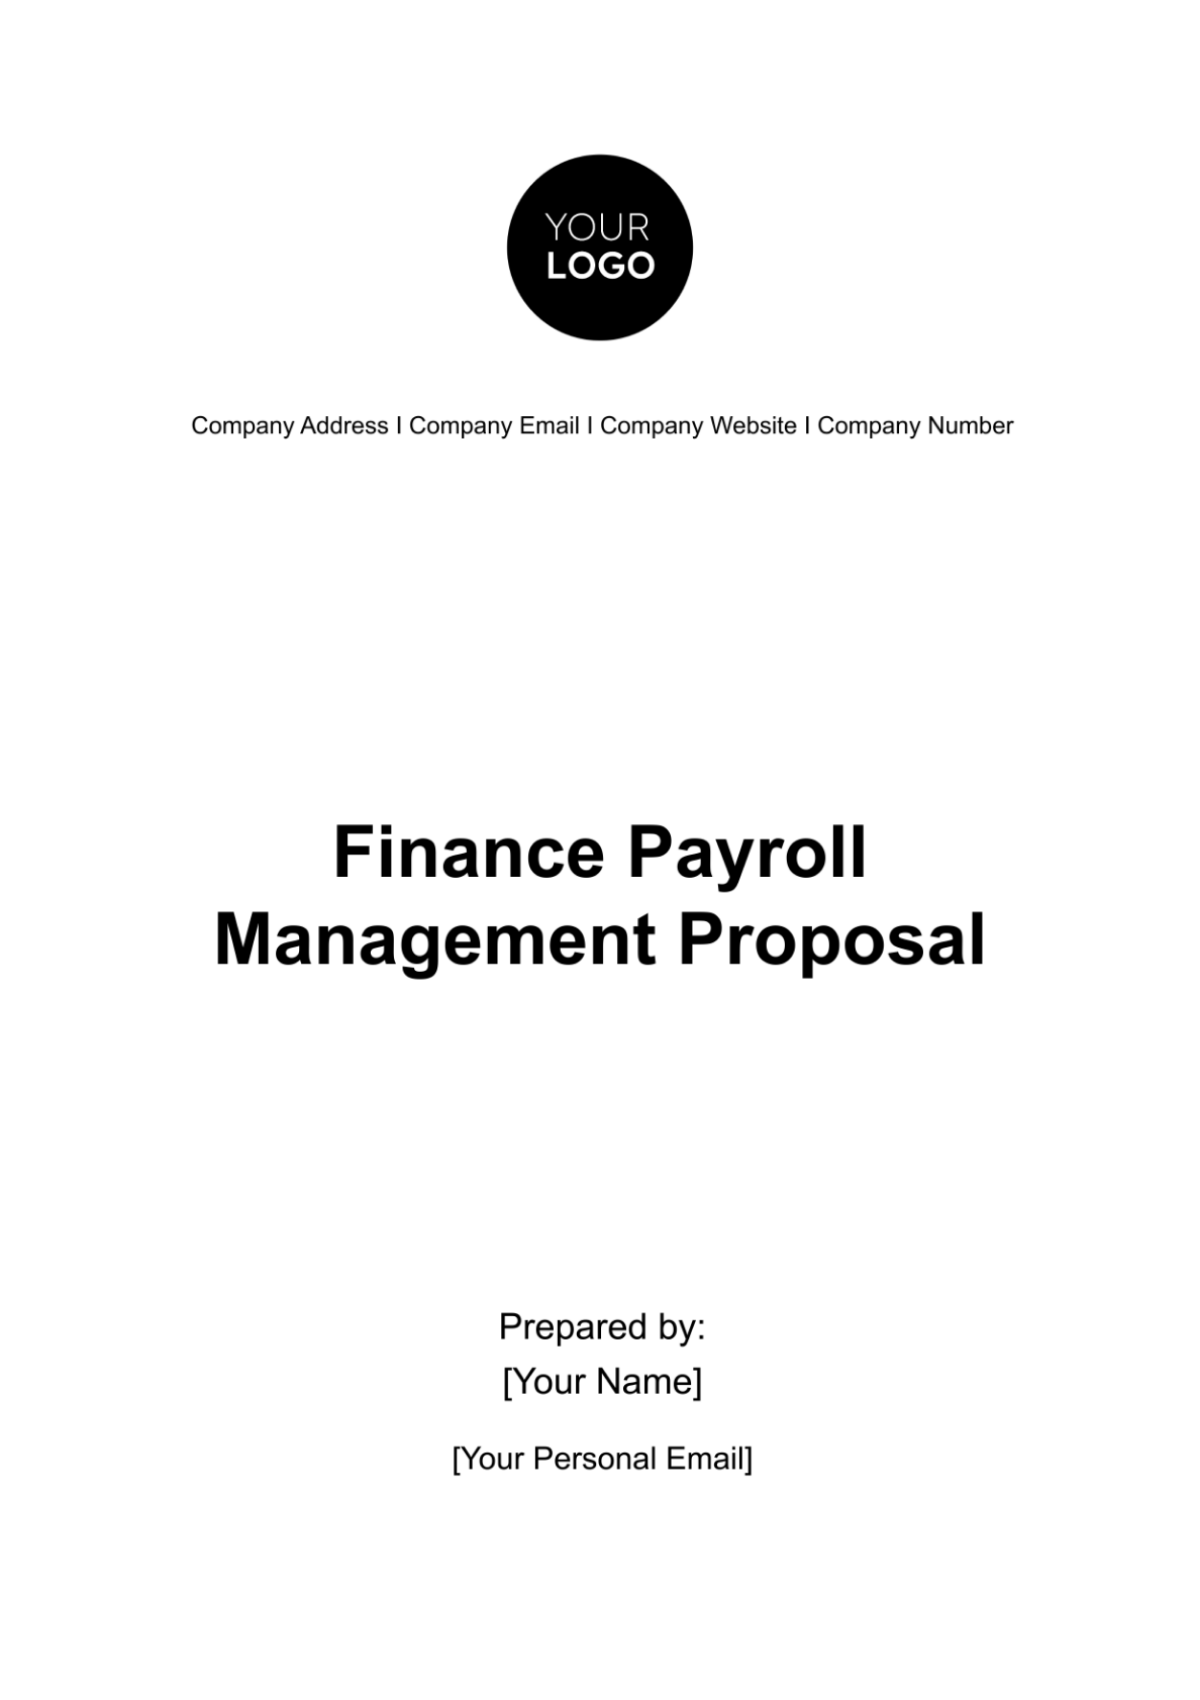 Finance Payroll Management Proposal Template